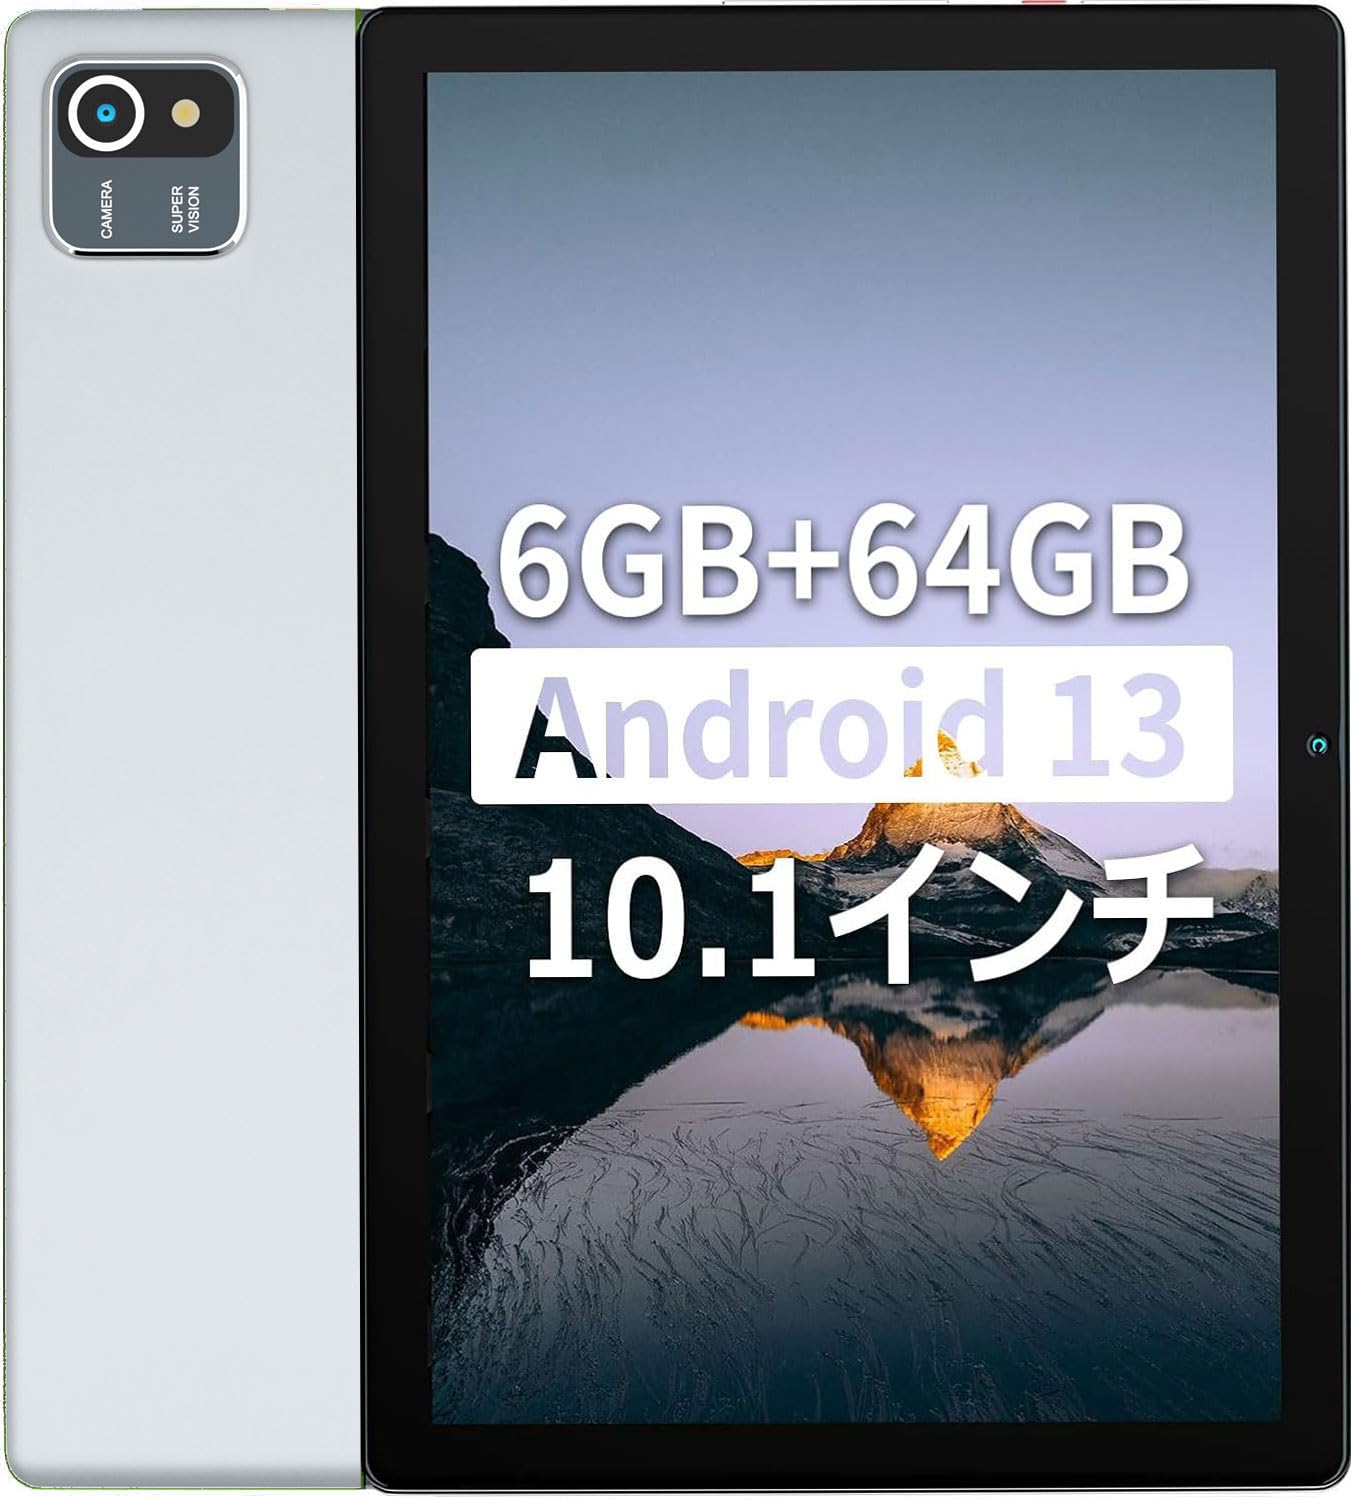 RA:【6GB RAM+64GB ROM Android 13】HiGrace タブレット 10インチ wi-fiモデル 1TB拡張可能 IPS 1280*800解像度 画面 5000mAh容量バッテリー 8MP/5MPカメラ 2.4G wifi Bluetooth GMS認証 Type-…